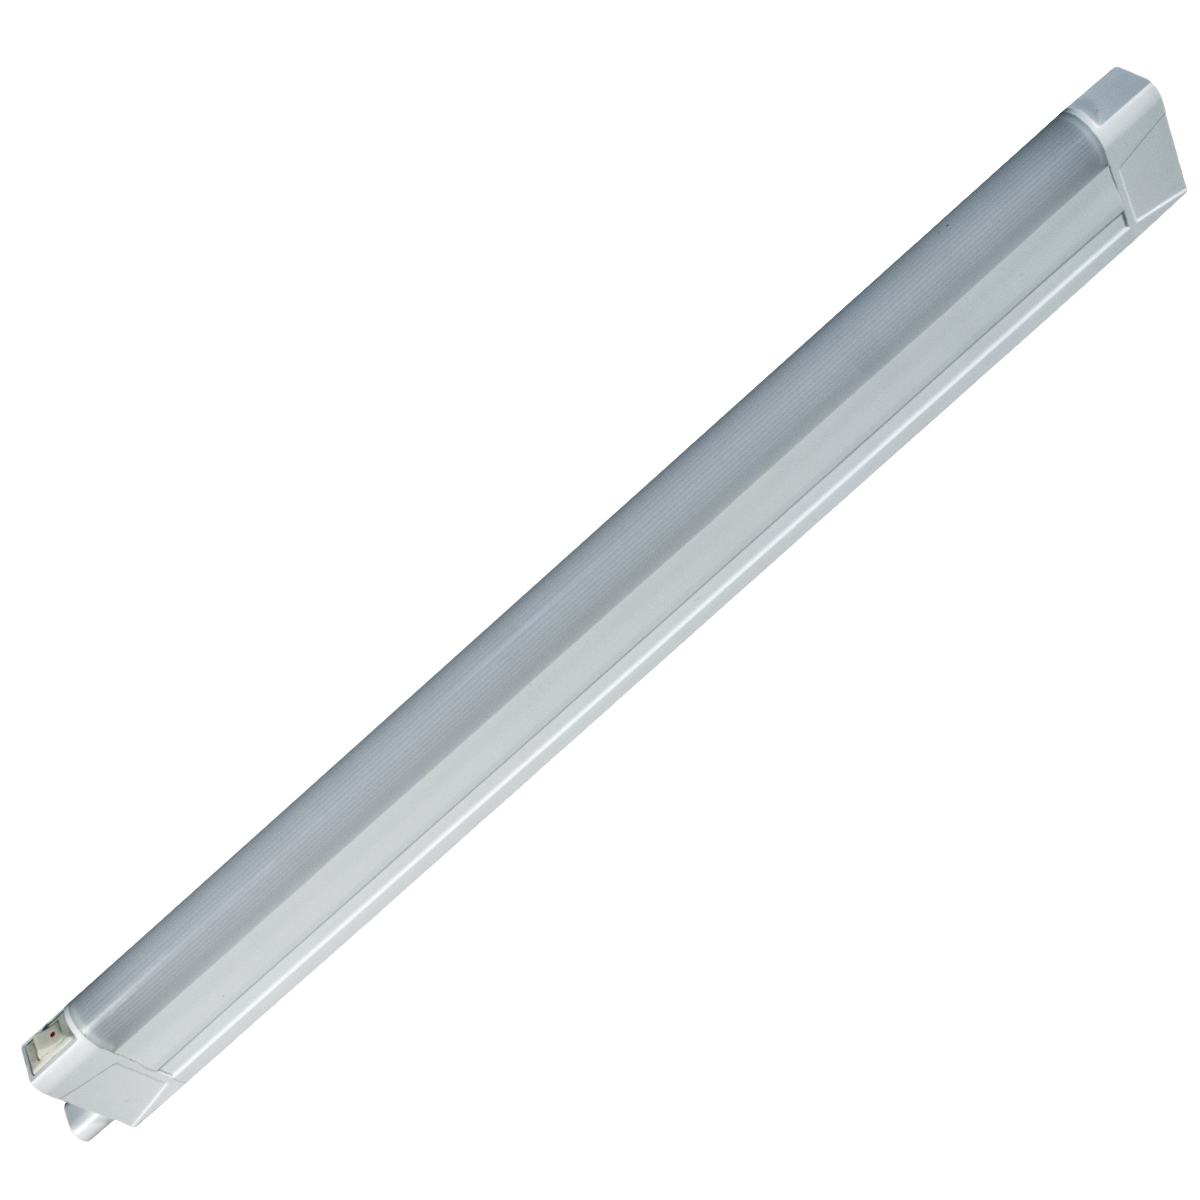 Светильник линейный светодиодный GLS LED Line 3, 392 мм,5Вт,220V,3000К, для ванных комнат паяльник s line zd 721n 220v 25w